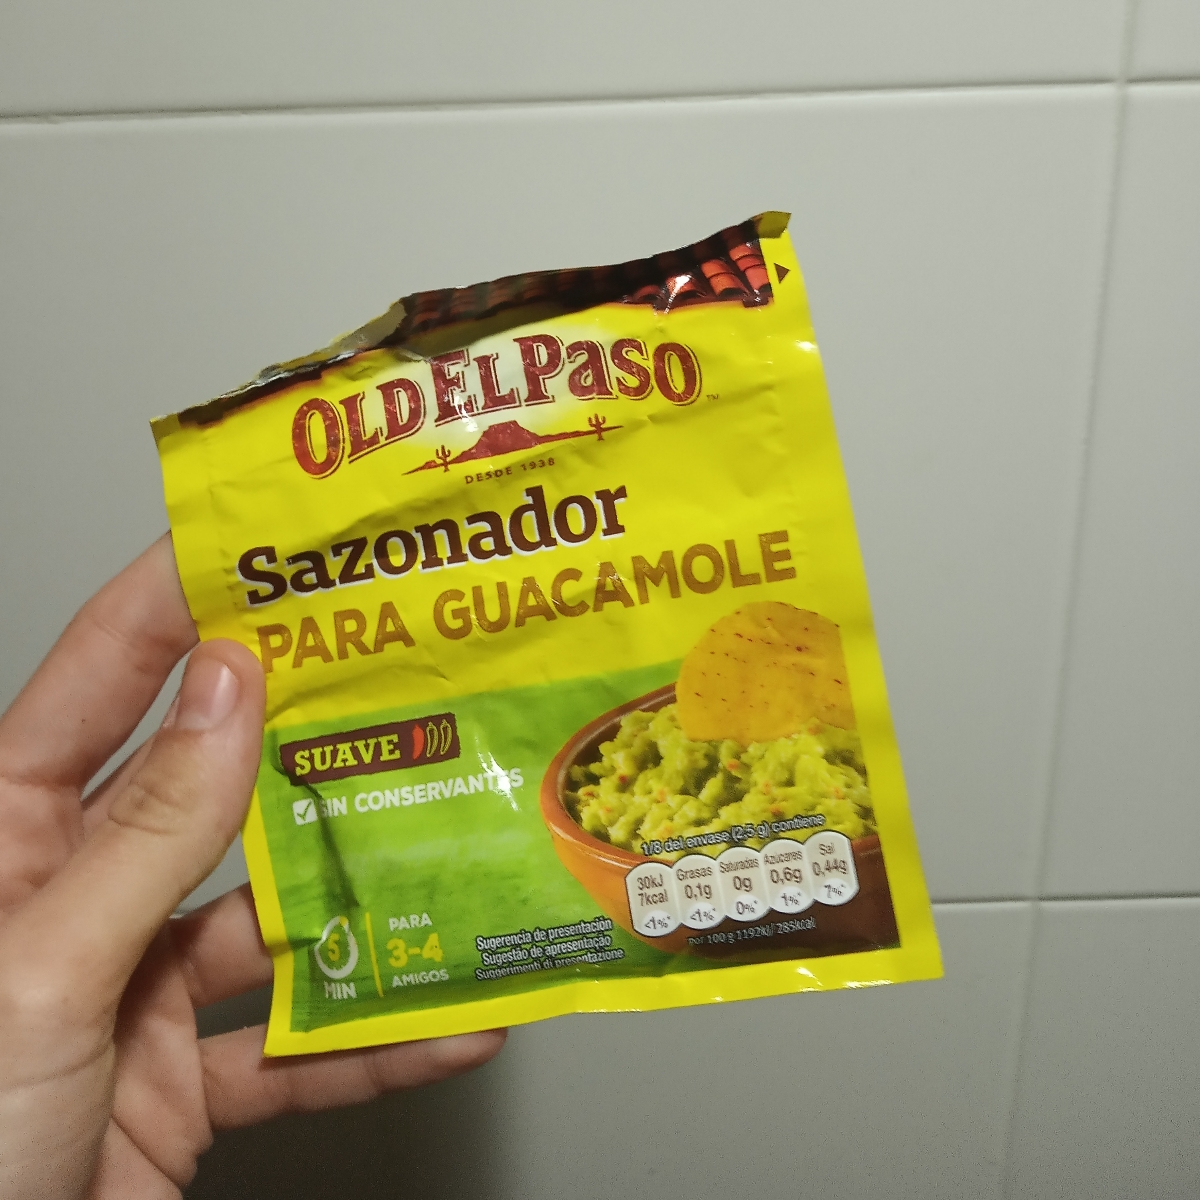 Guacamole Sazonador